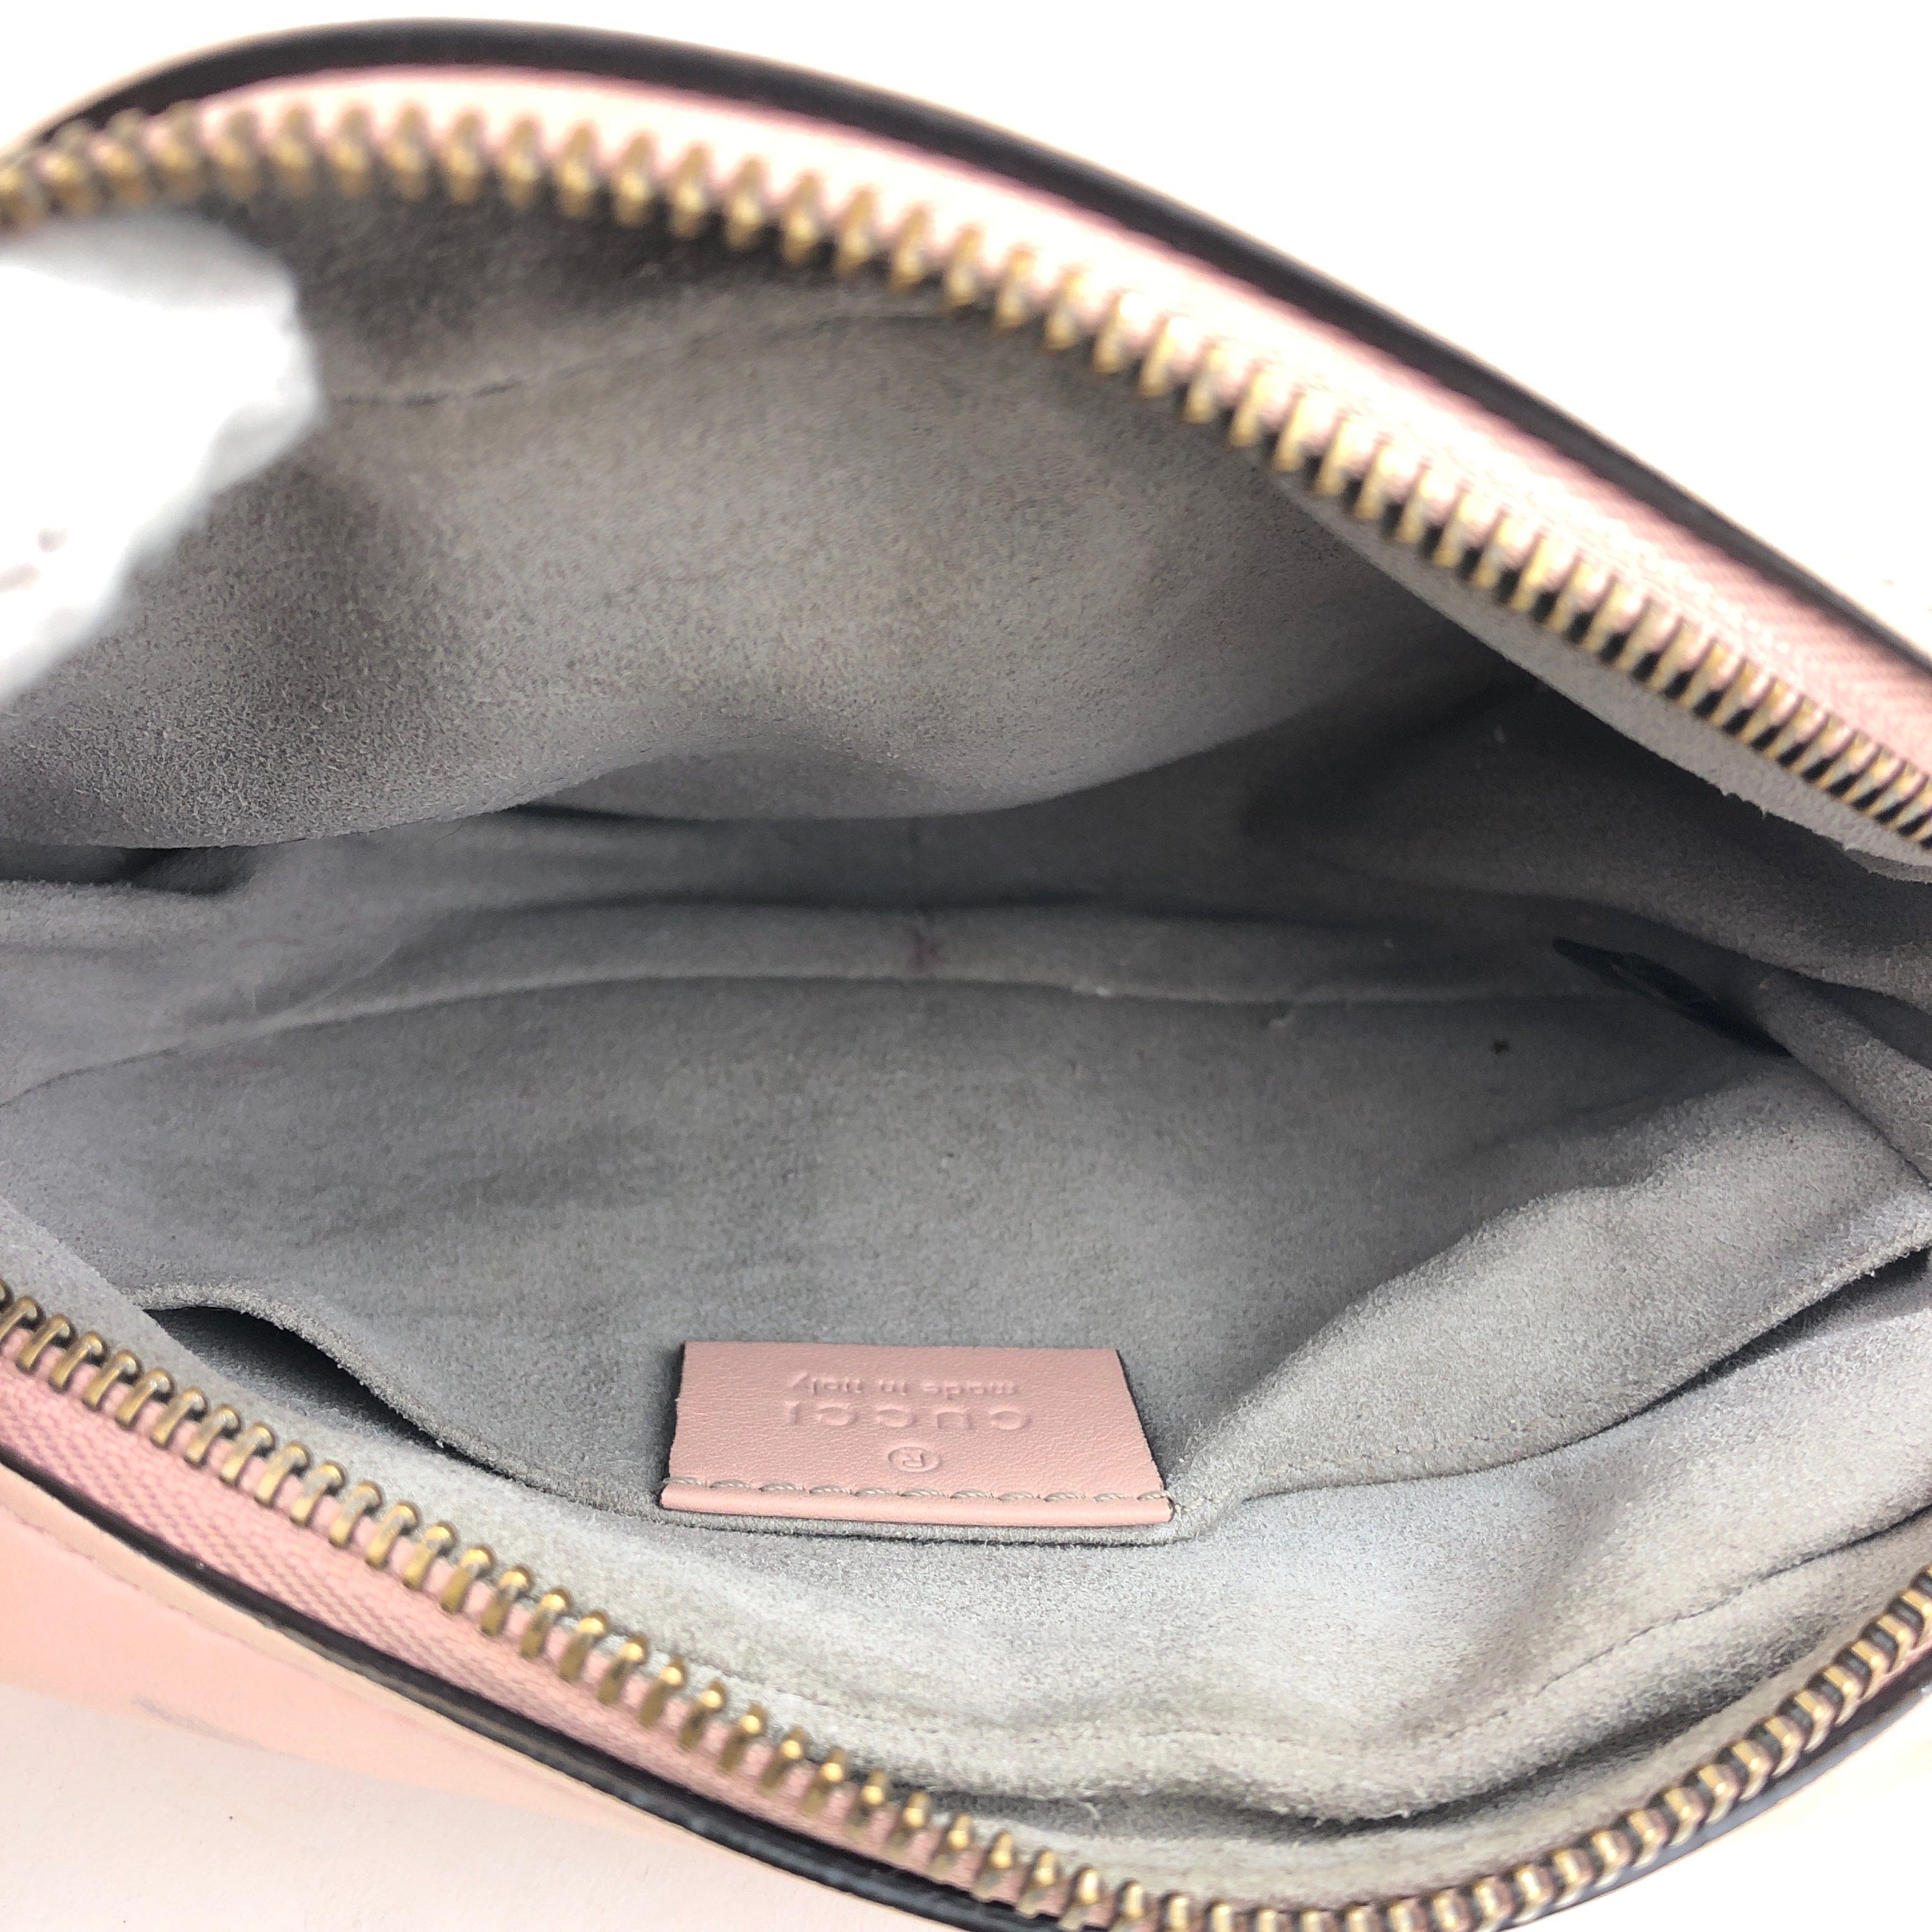 Gucci Pink Mini Gucci Marmont Shoulder Bag PXL2359